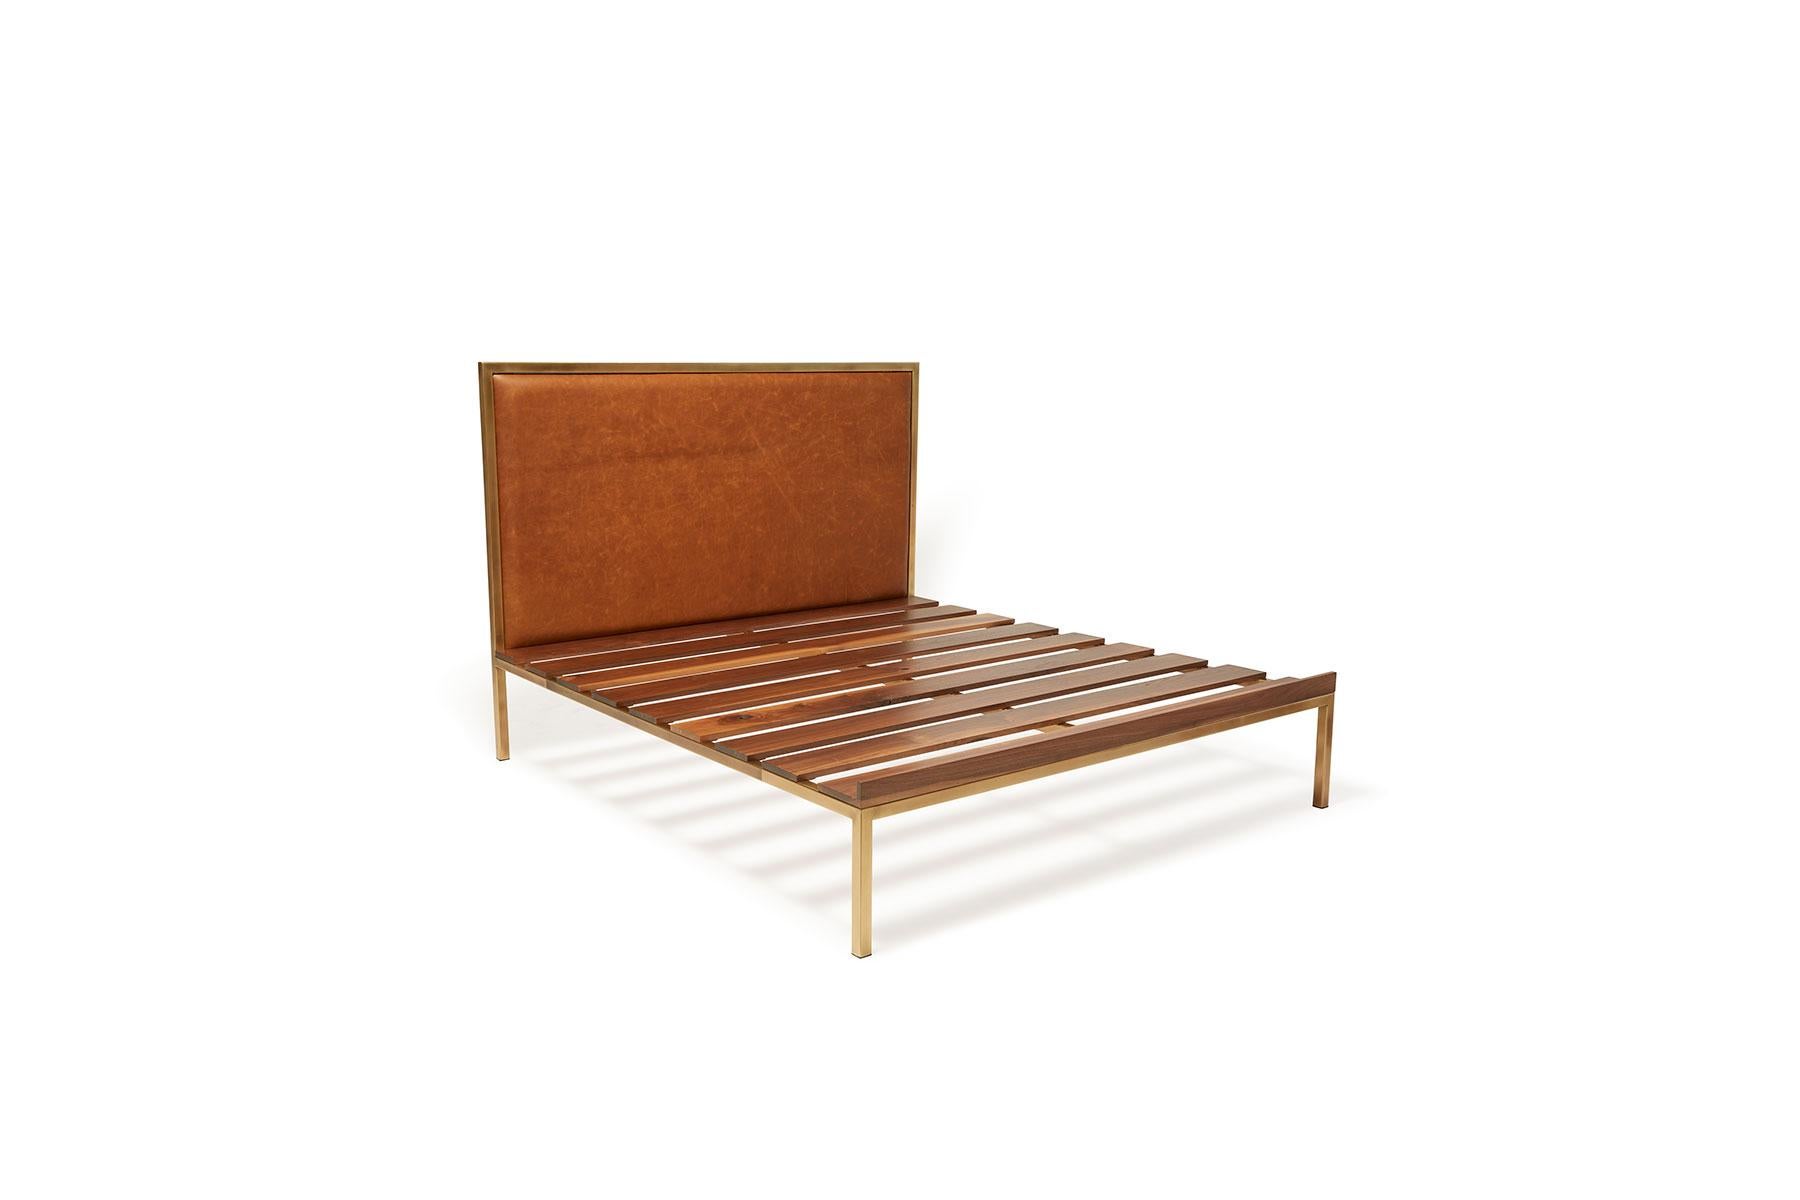 Reposez-vous avec style sur le lit Inheritance de Stephen Kenn. 

Cette variante minimaliste ne comporte pas de tables de chevet ni de banc intégrés. 

À partir d'un cadre en acier tubulaire en laiton antique, des lattes en bois de noyer sont